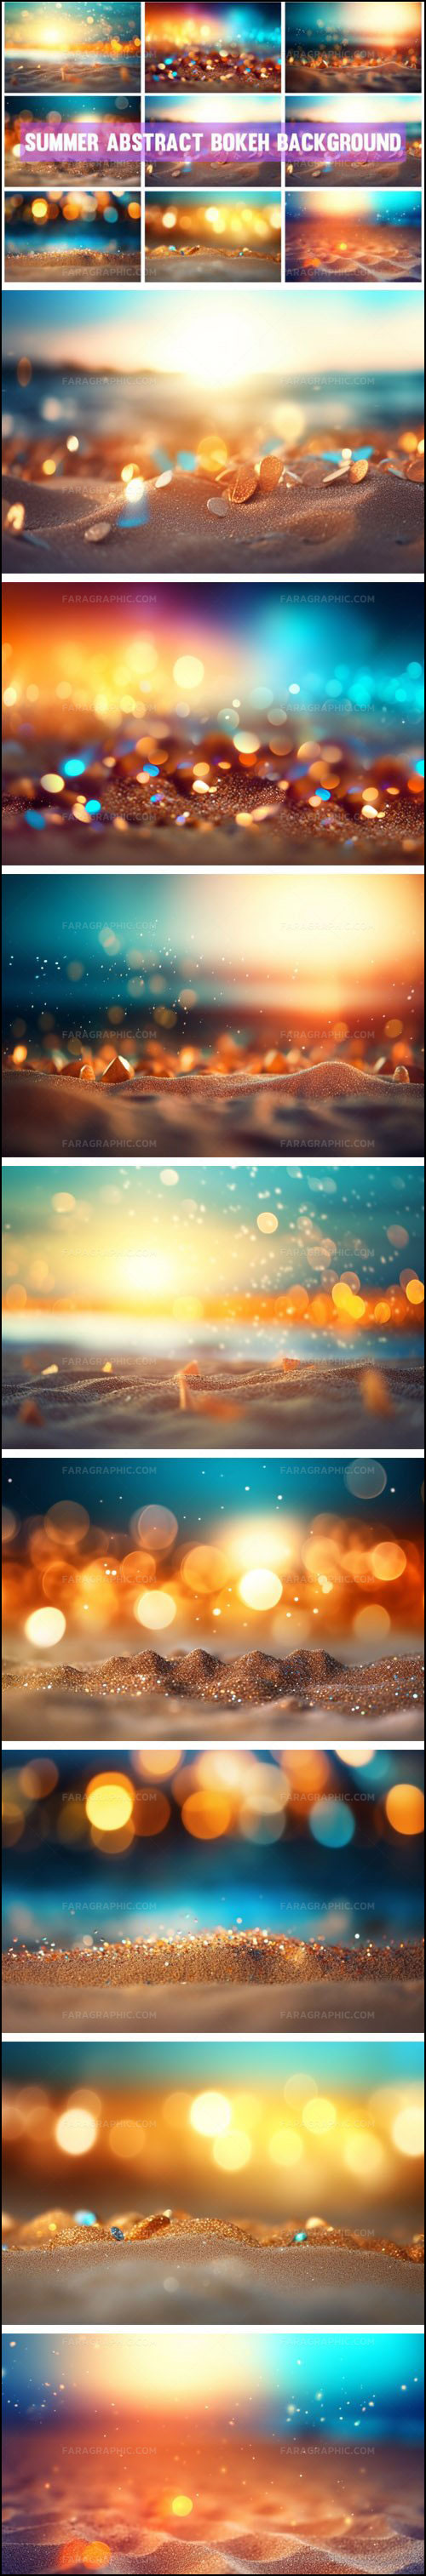 دانلود تصاویر استوک ساحل و نور بوکه